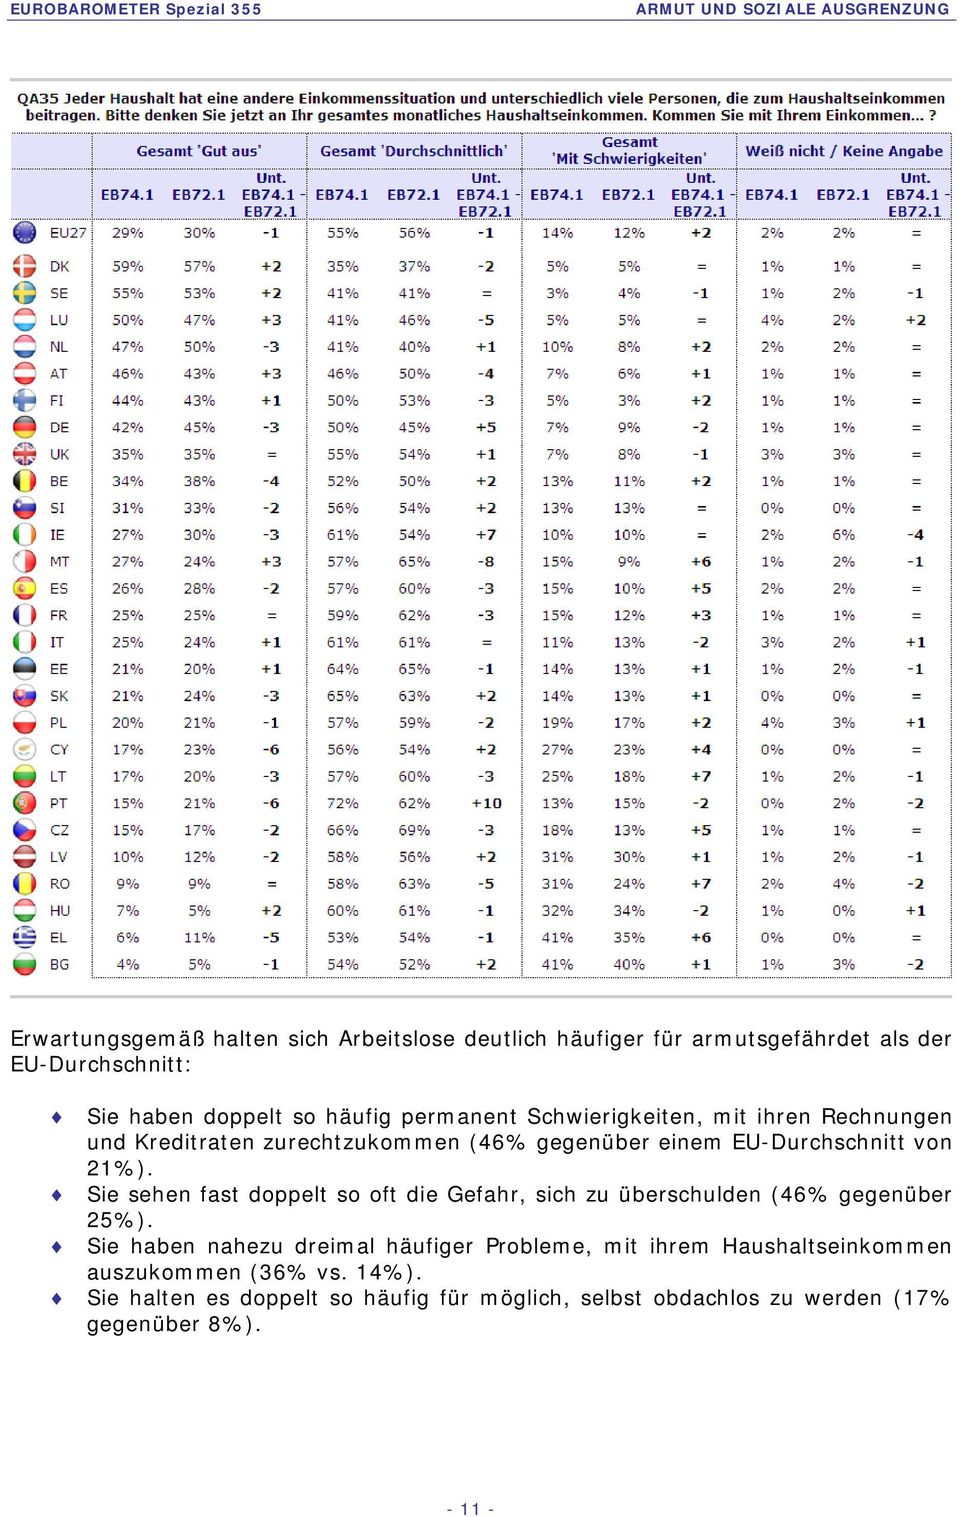 EU-Durchschnitt von 21). Sie sehen fast doppelt so oft die Gefahr, sich zu überschulden (46 gegenüber 25).